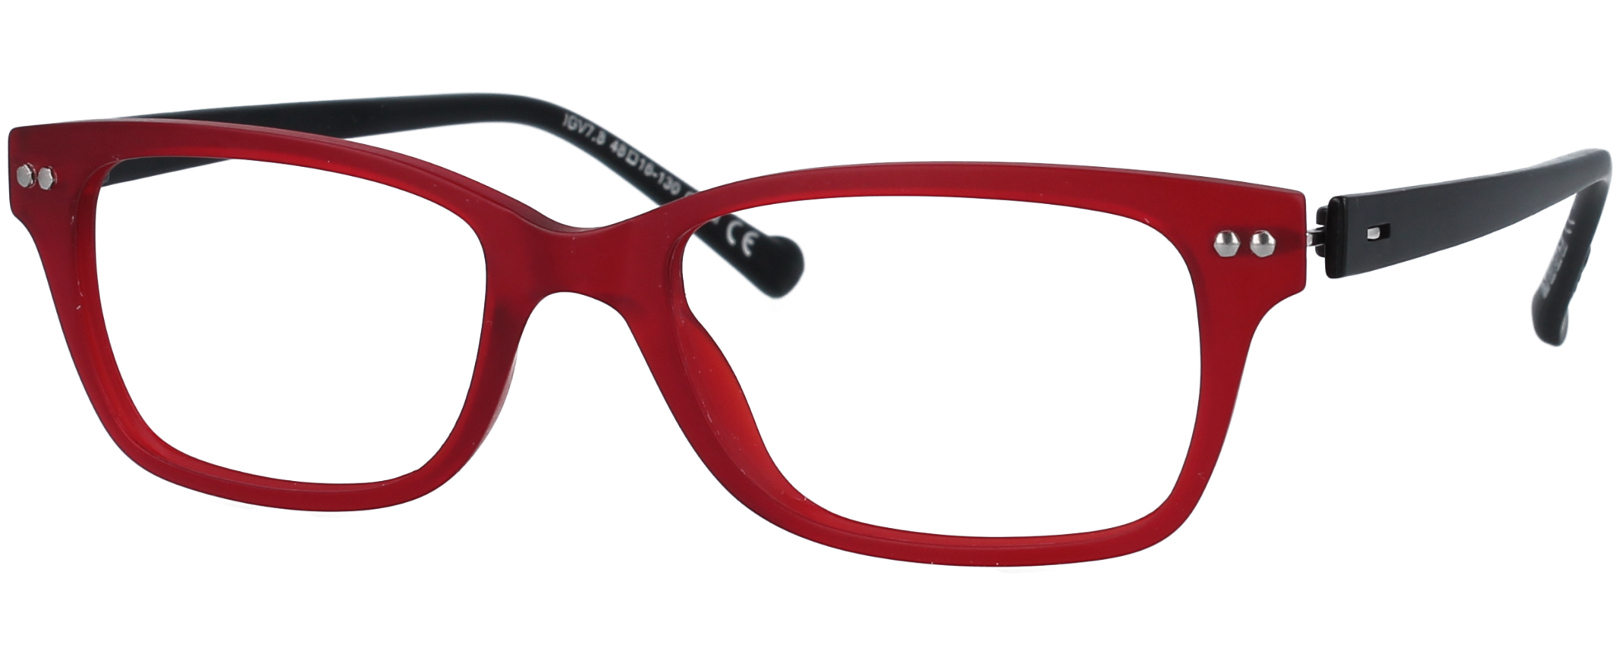 iGreen Style V-7.8 | The Eyeglass Club